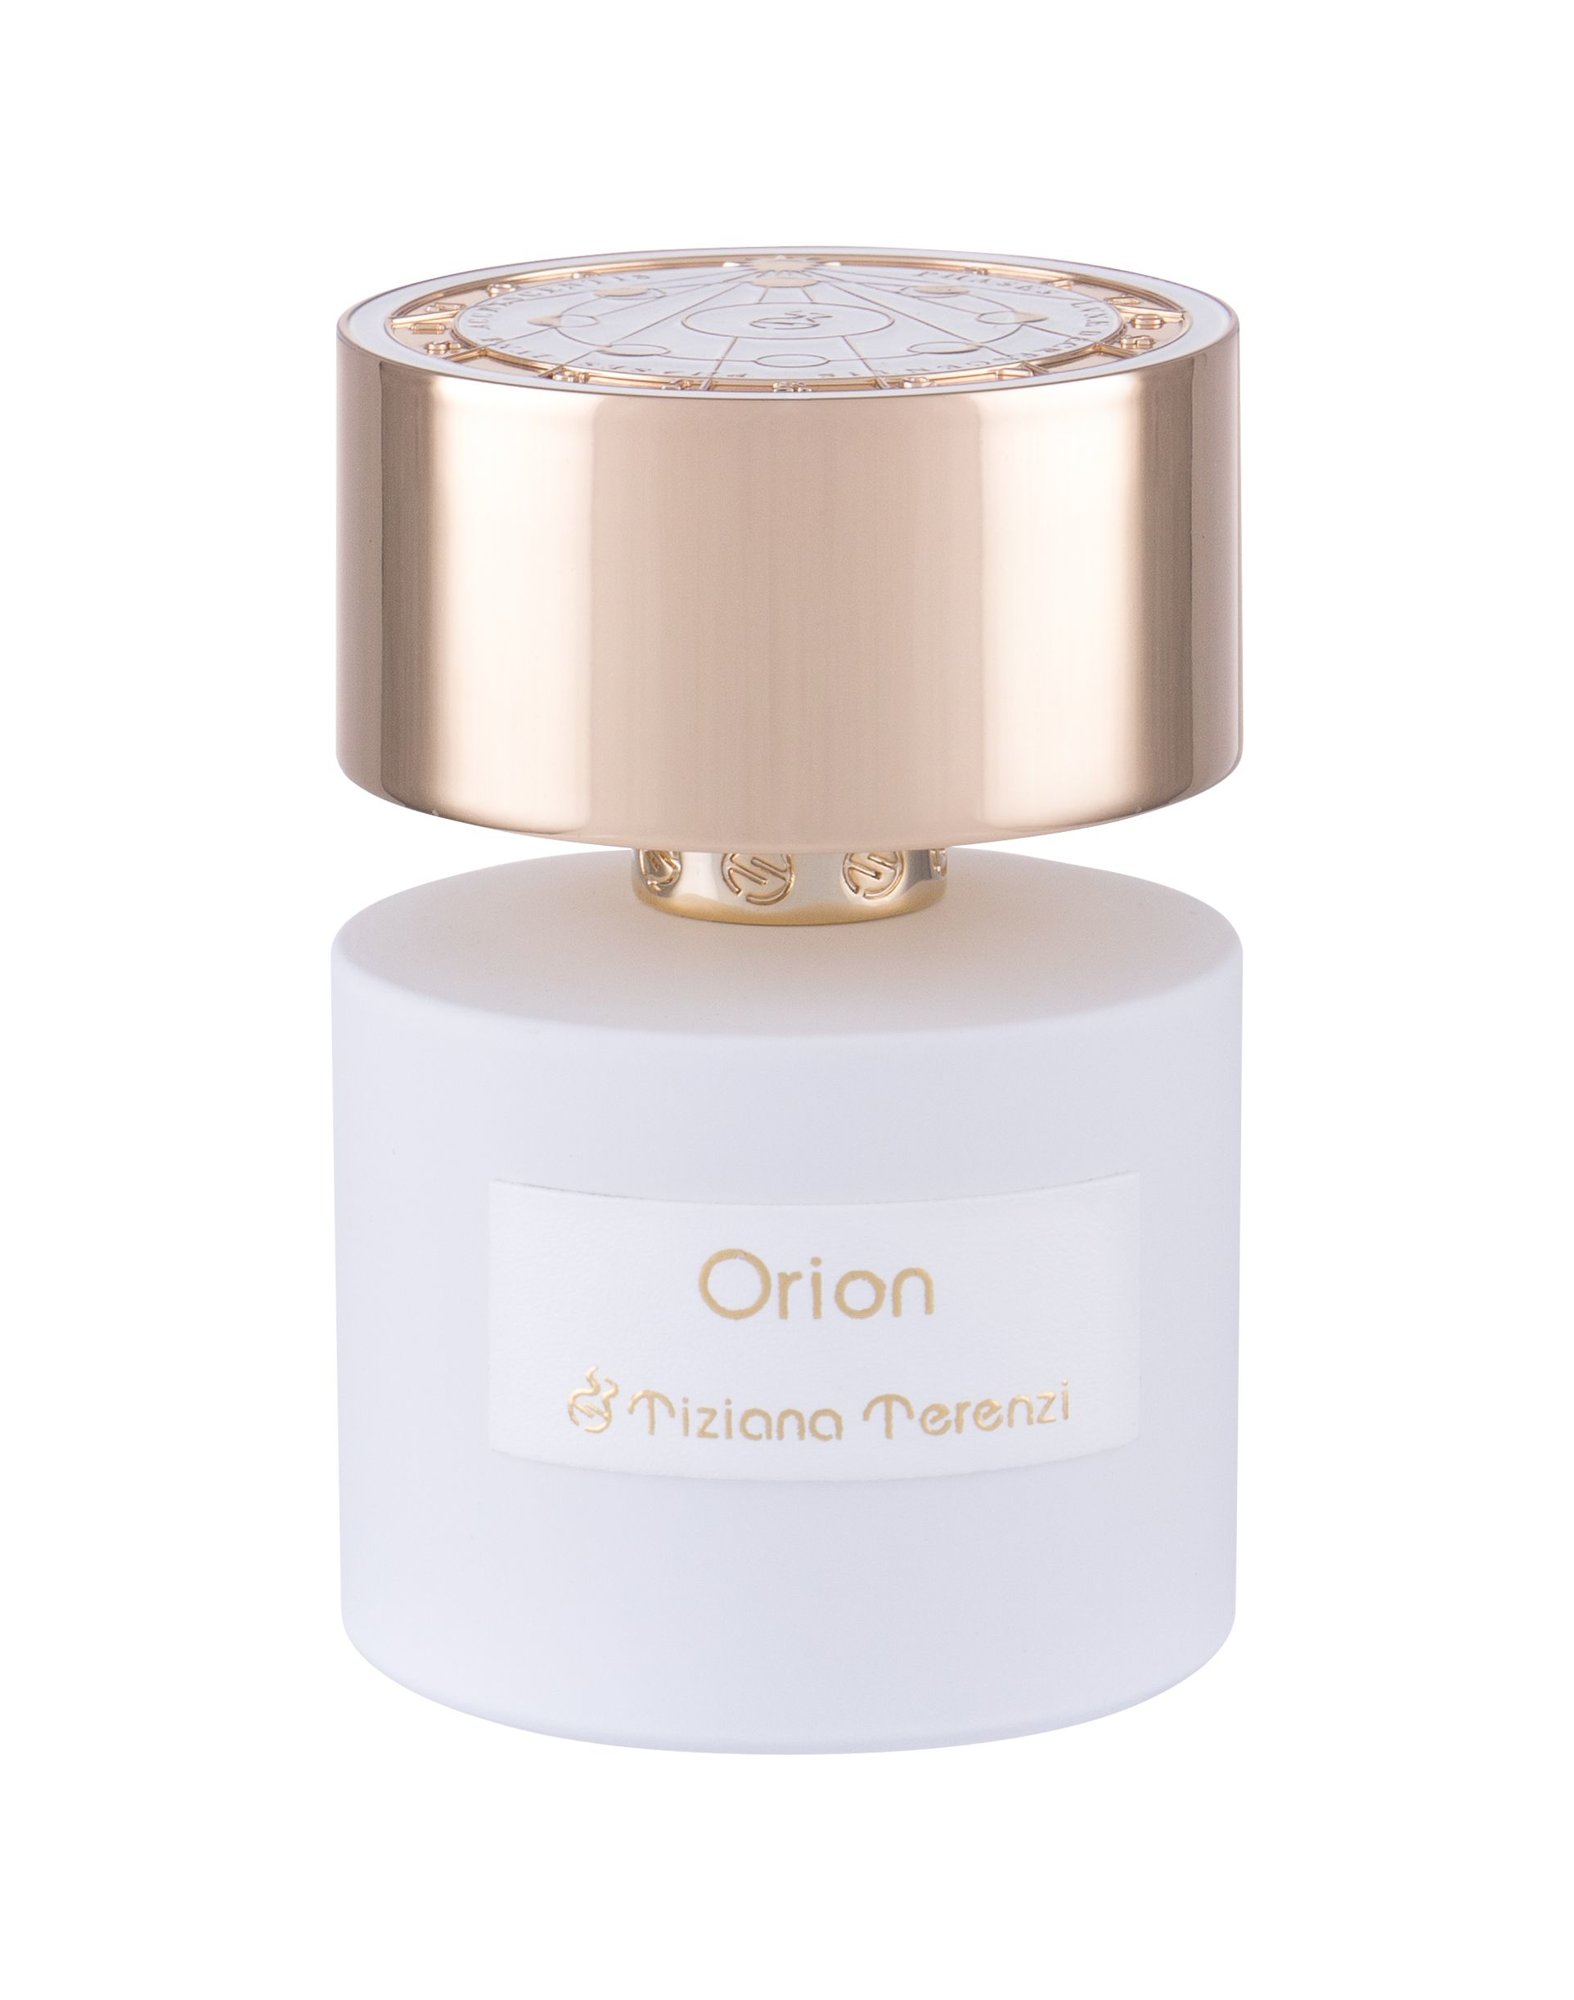 Tiziana Terenzi Orion 15 ml NIŠINIAI kvepalų mėginukas (atomaizeris) Unisex Parfum